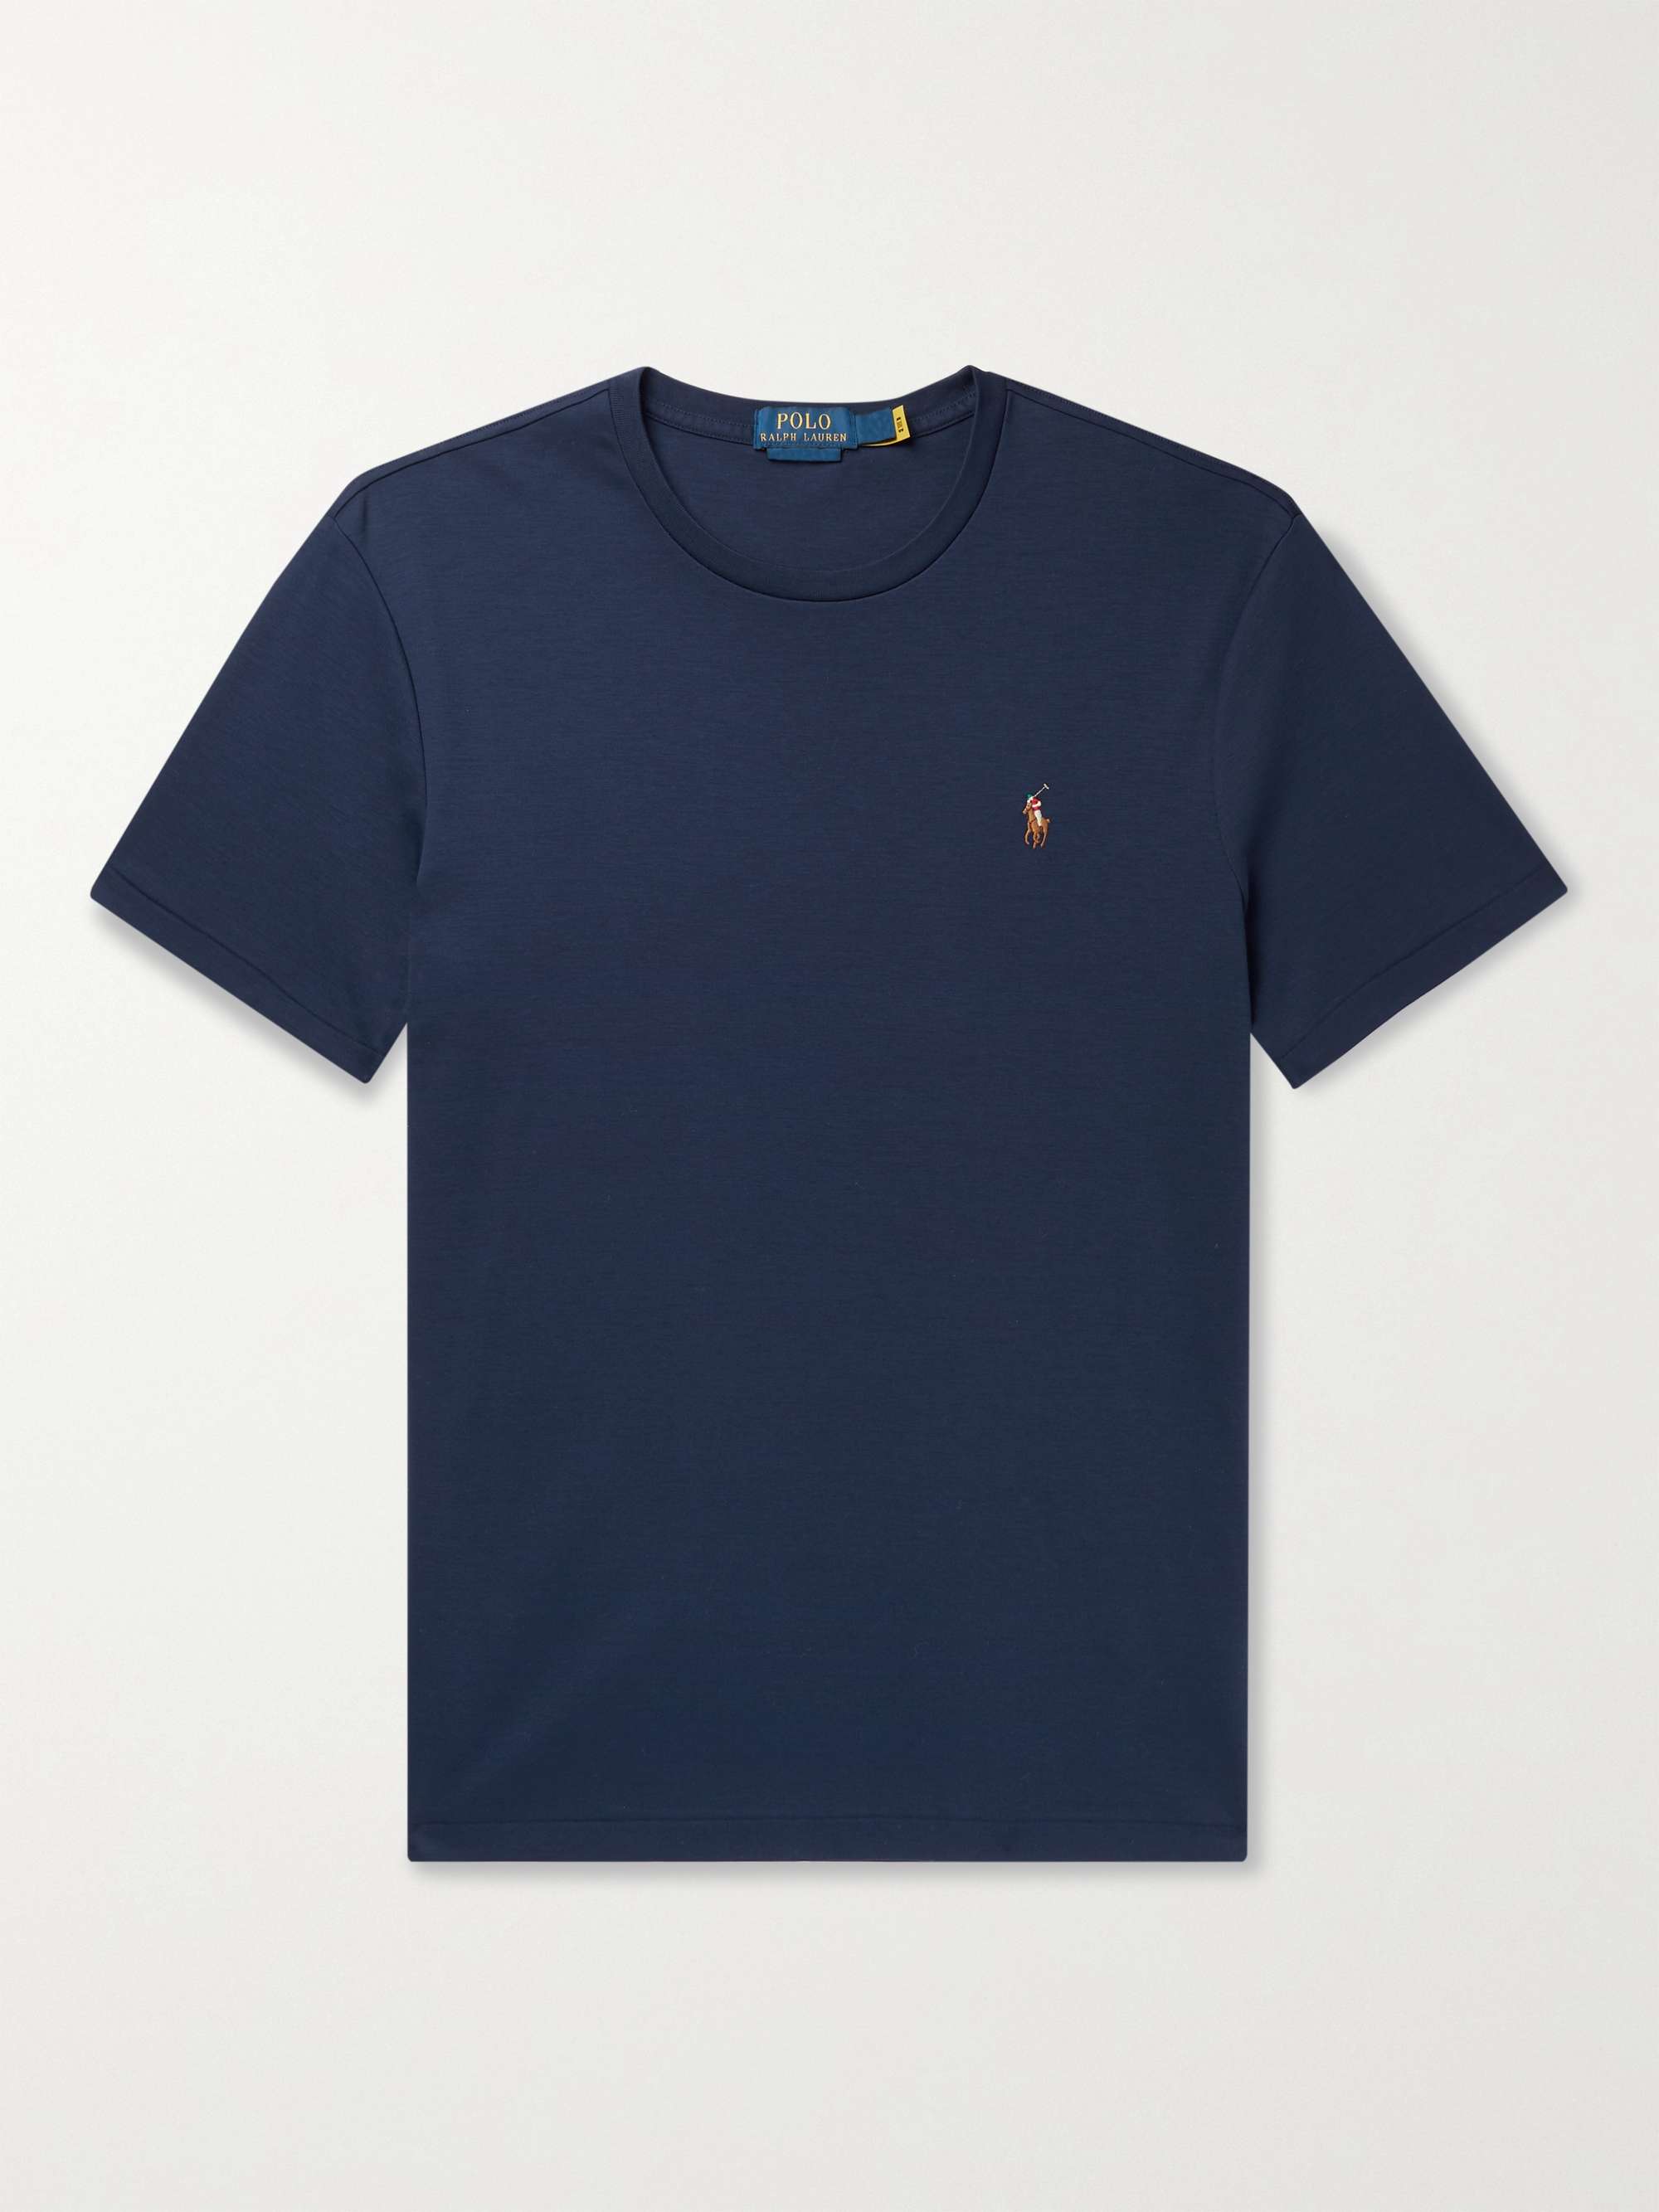 Navy Cotton-Jersey T-Shirt | POLO RALPH LAUREN | MR PORTER